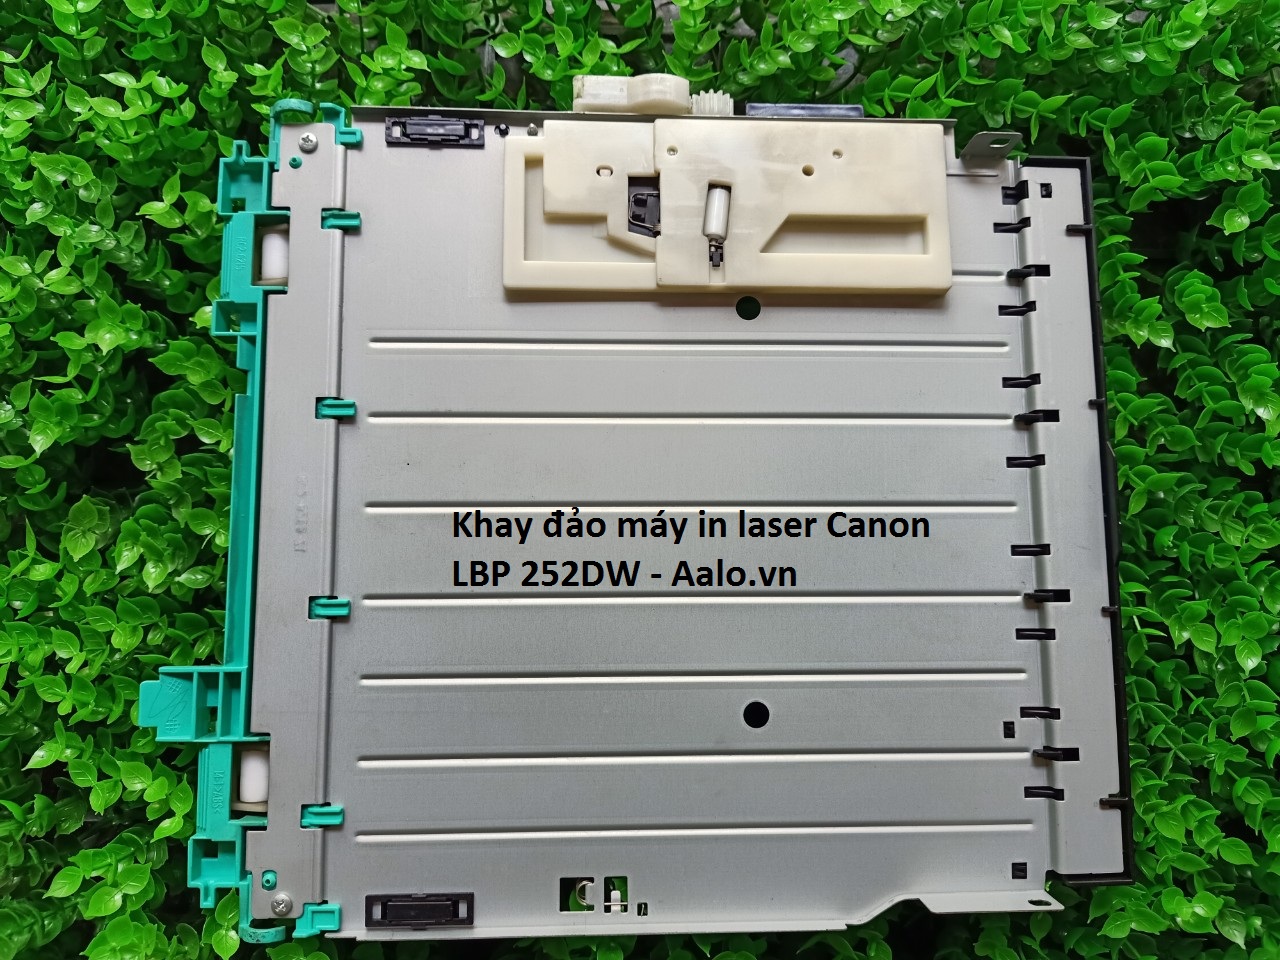 Khay đảo máy in laser Canon LBP 252DW - Aalo.vn